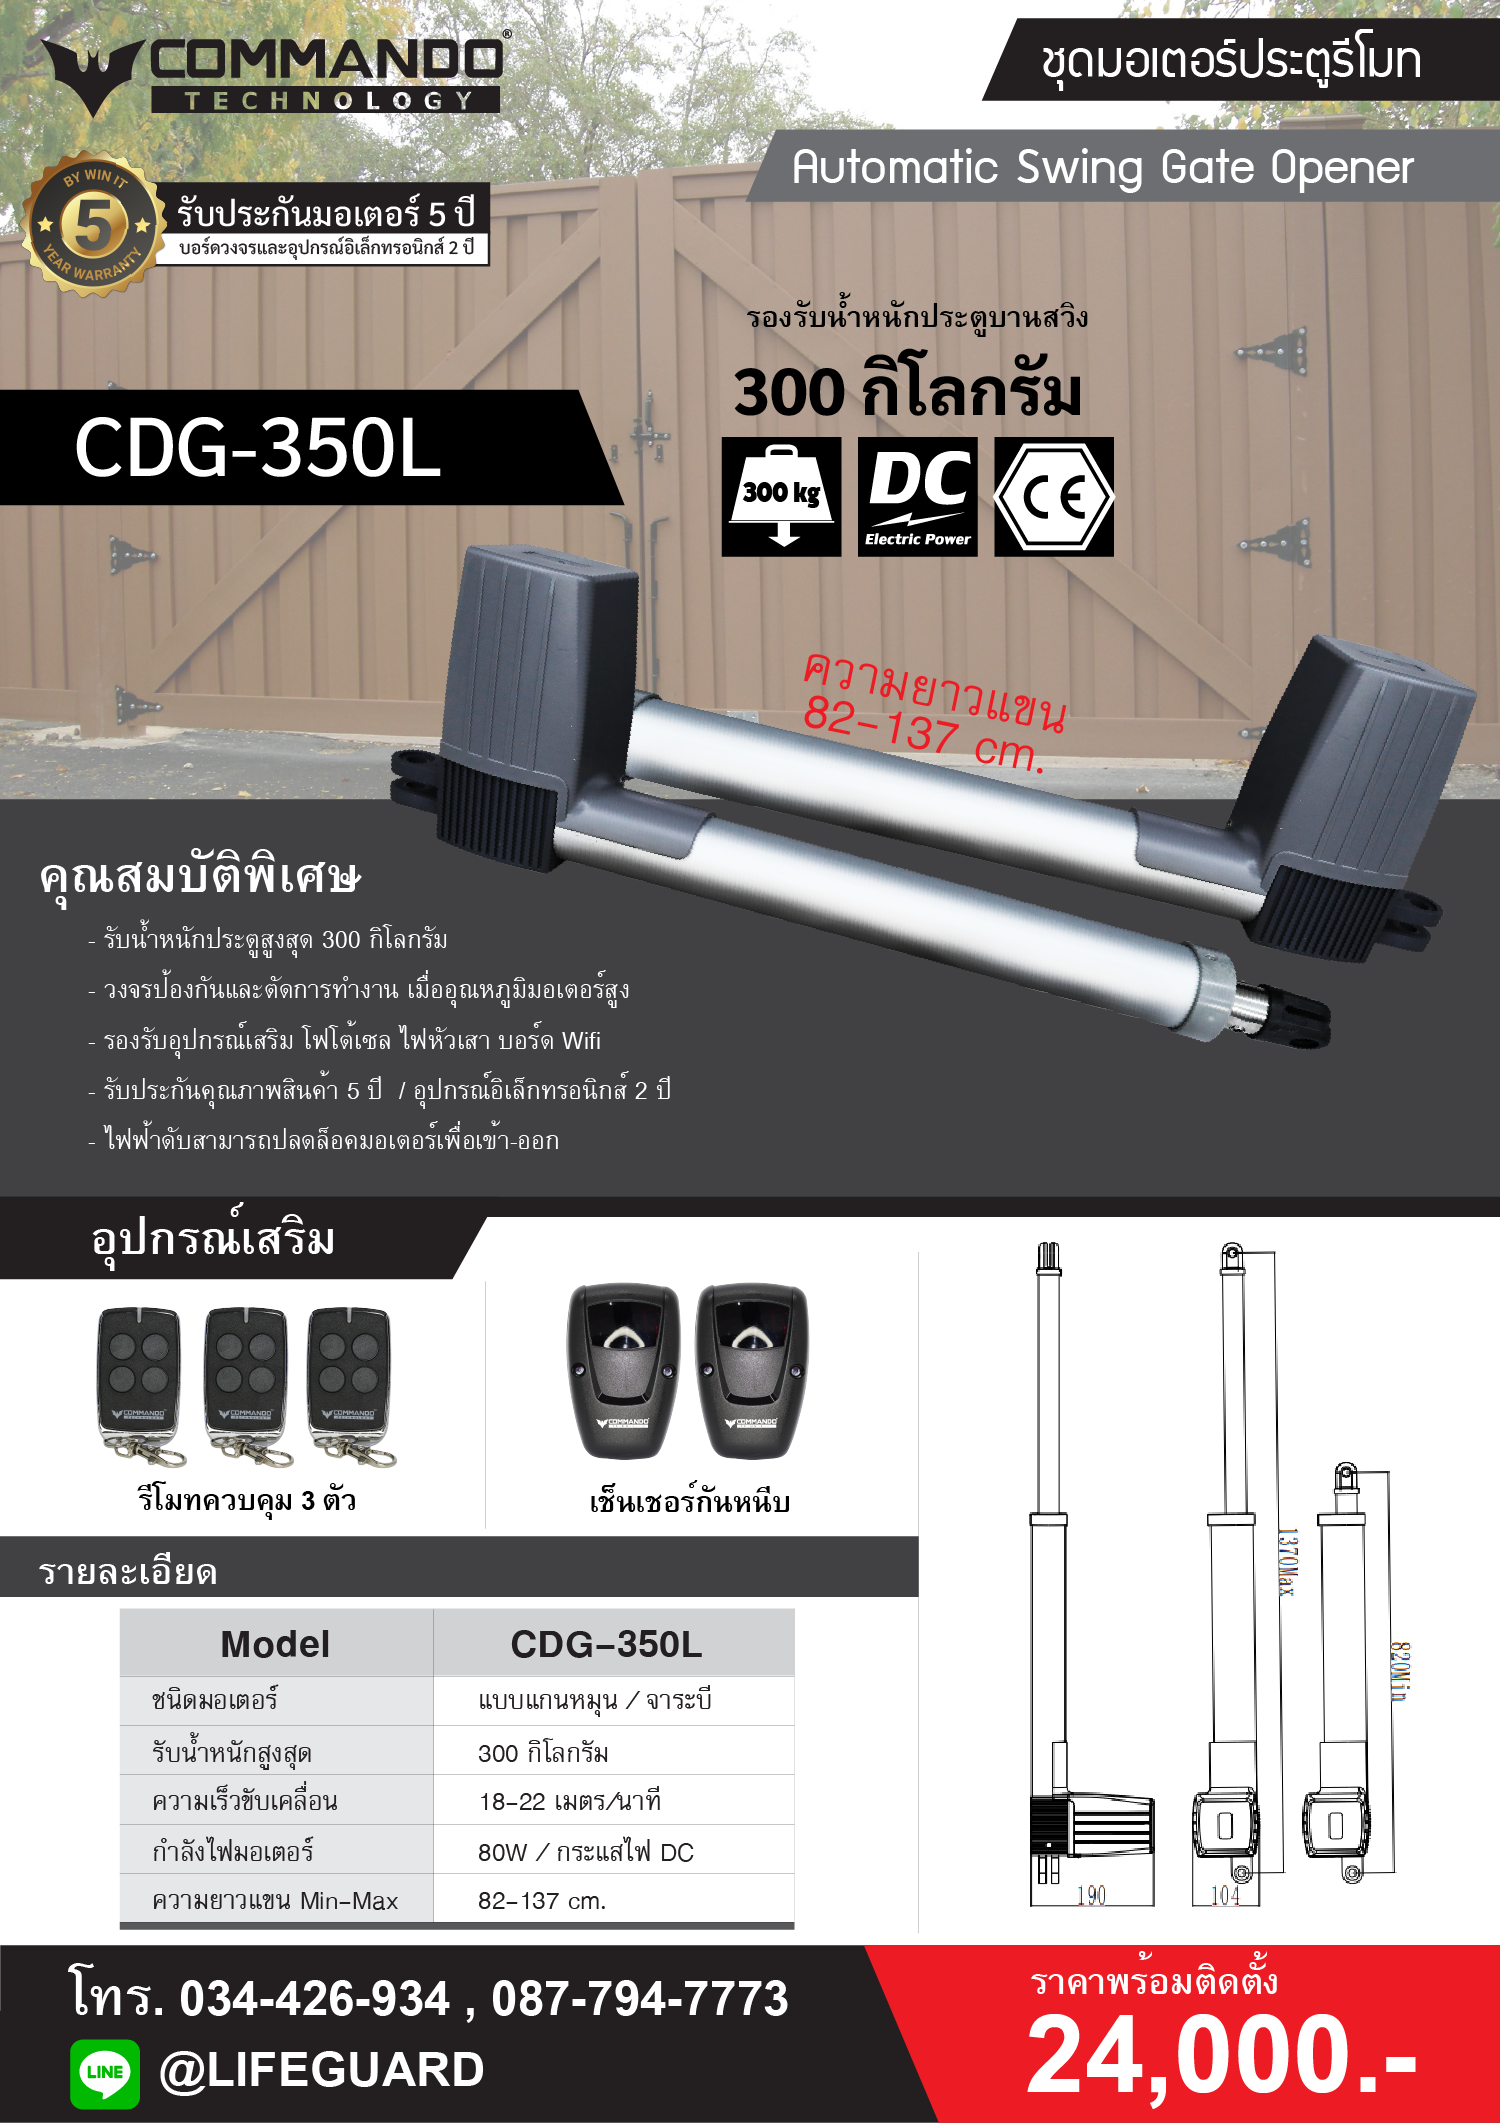 CDG-350L